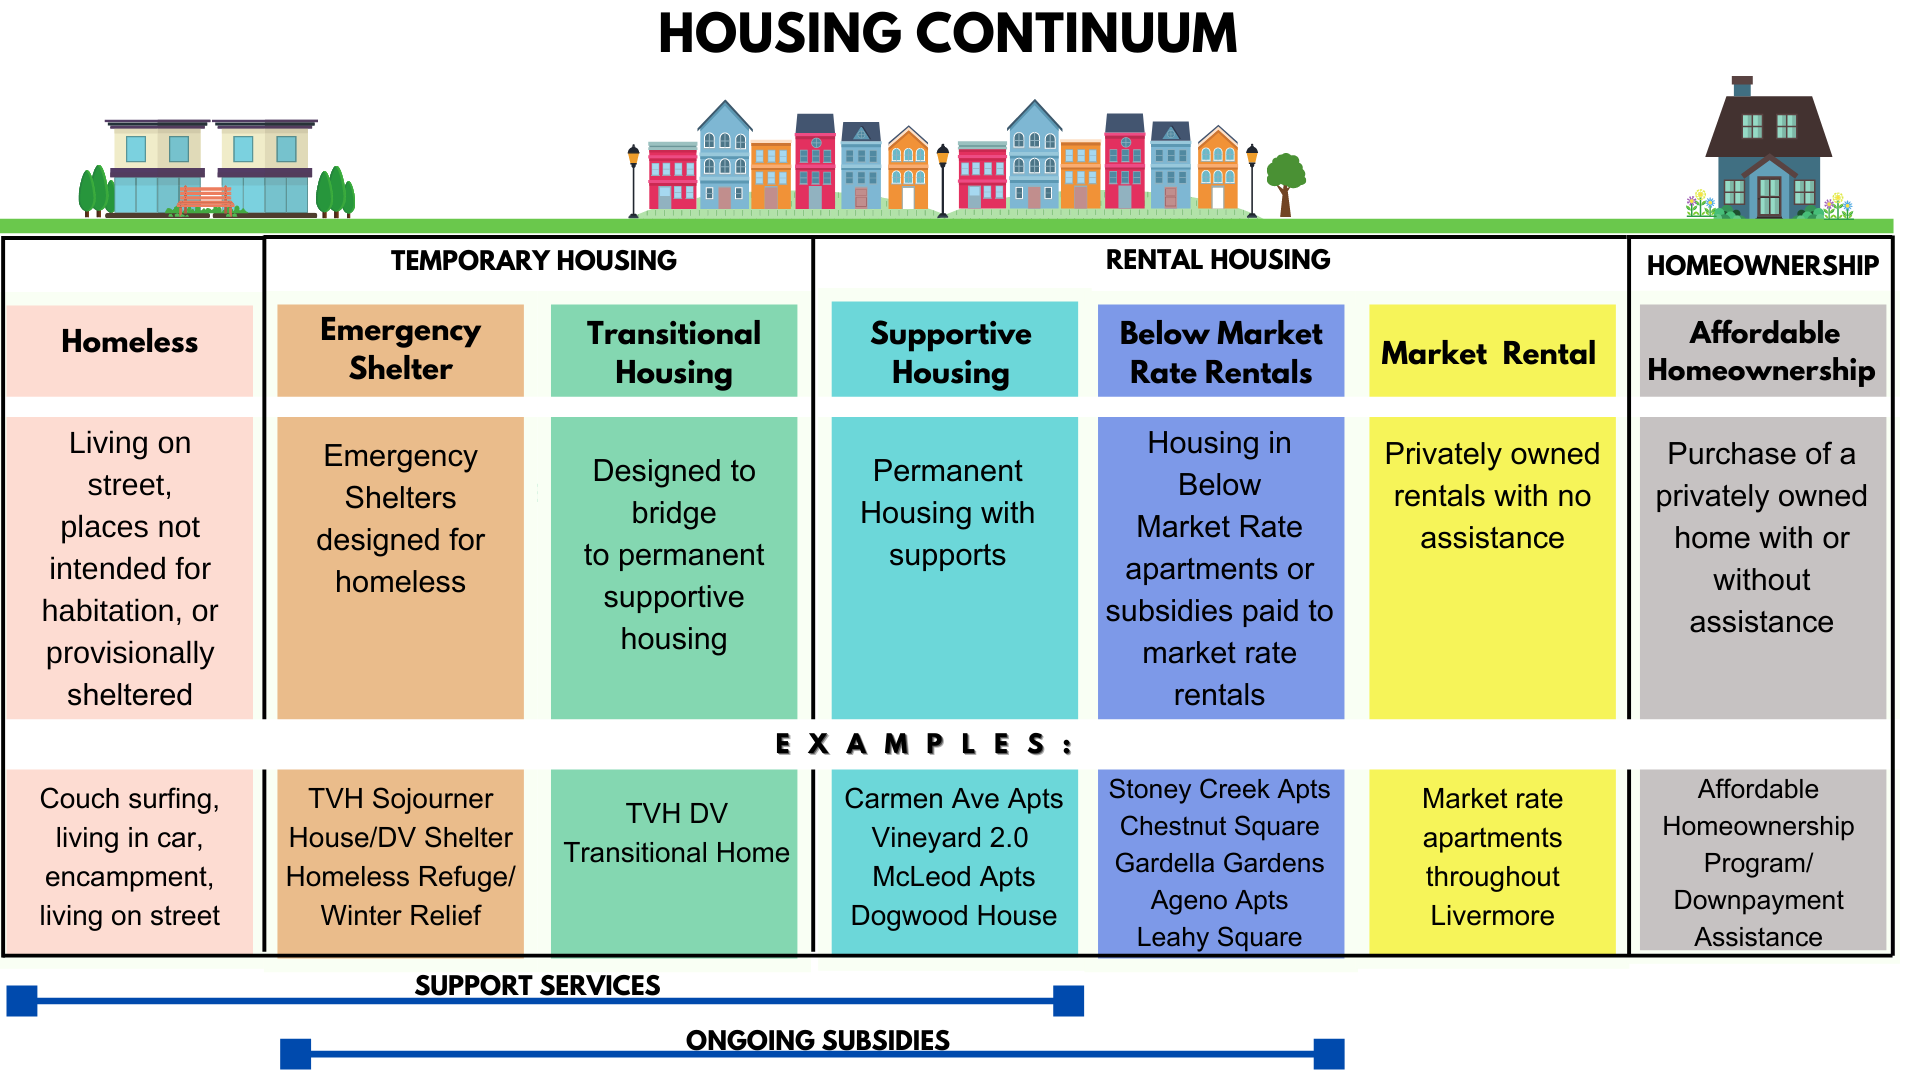 The Housing Continuum graphic